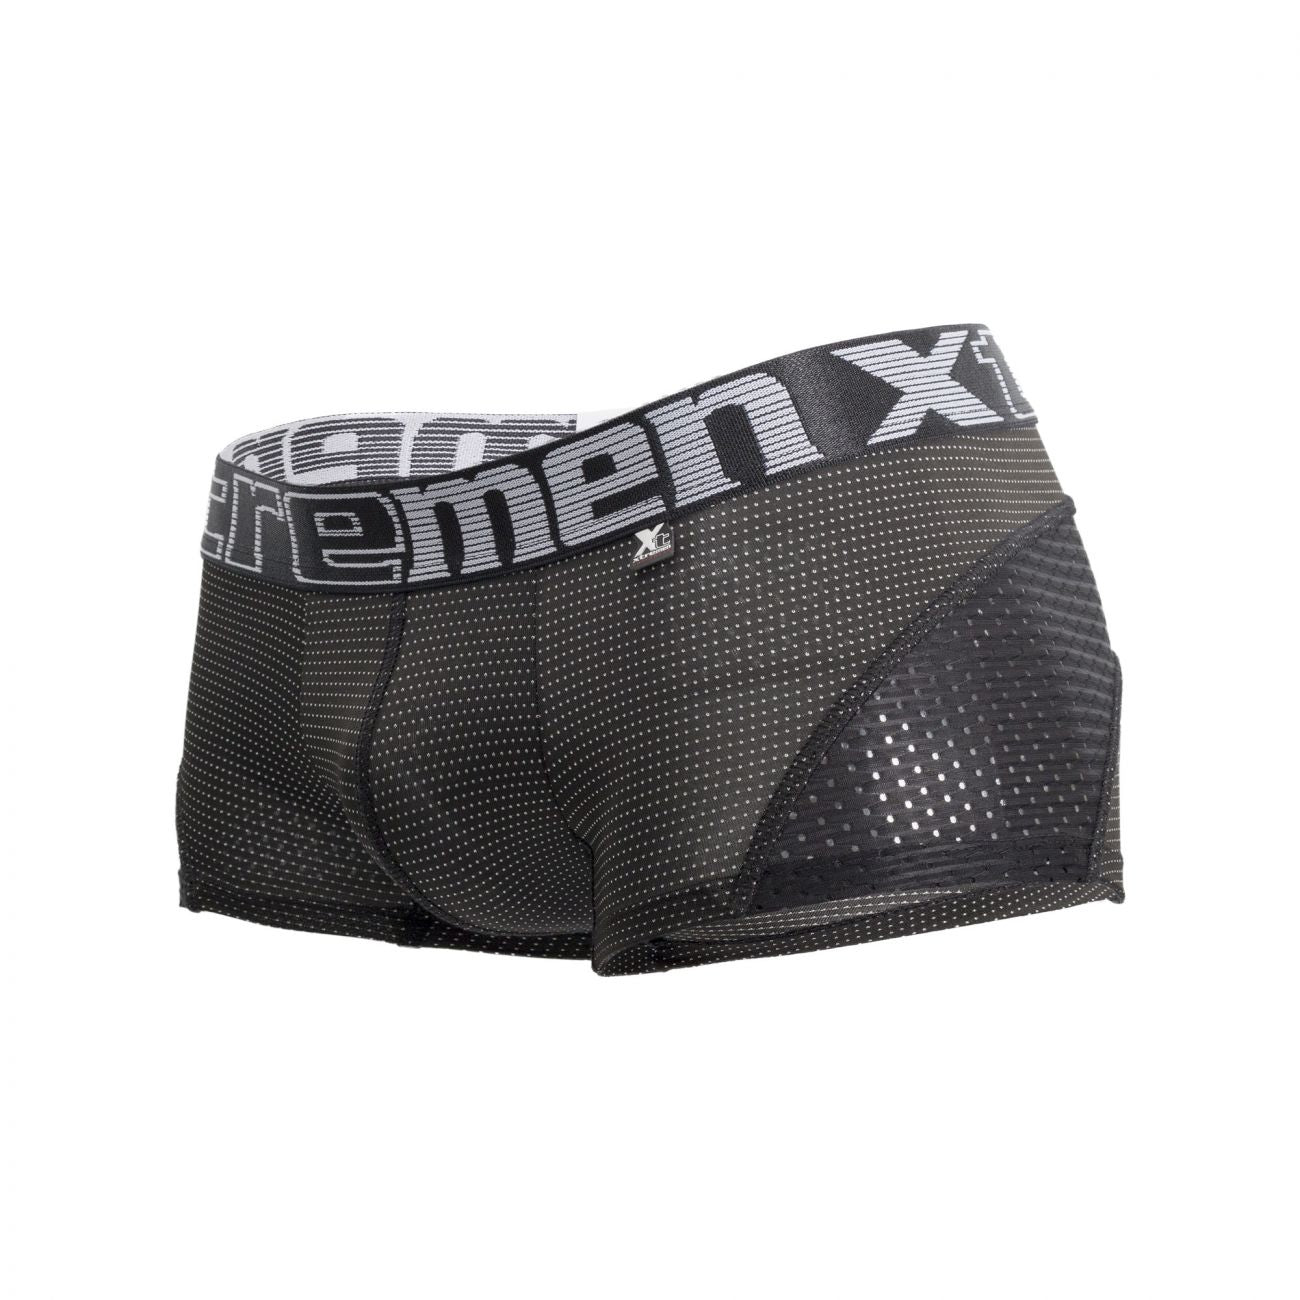 Xtremen 91030 Sports Mesh Boxer Briefs